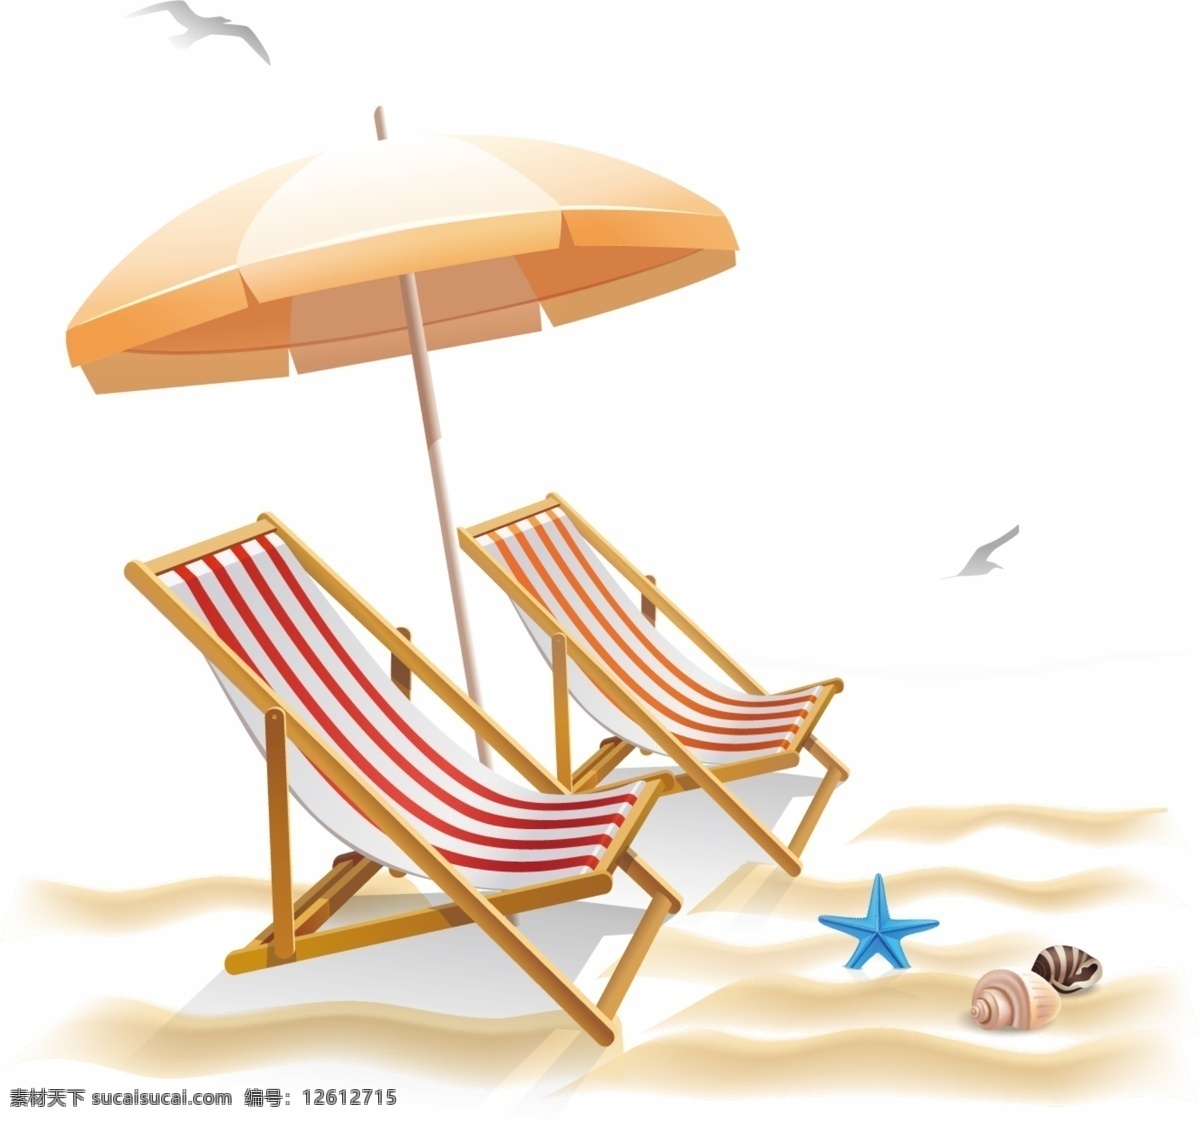 夏日 海边 休闲度假 游泳 沙滩 躺椅 太阳伞 休闲椅 夏季 舒适 度假